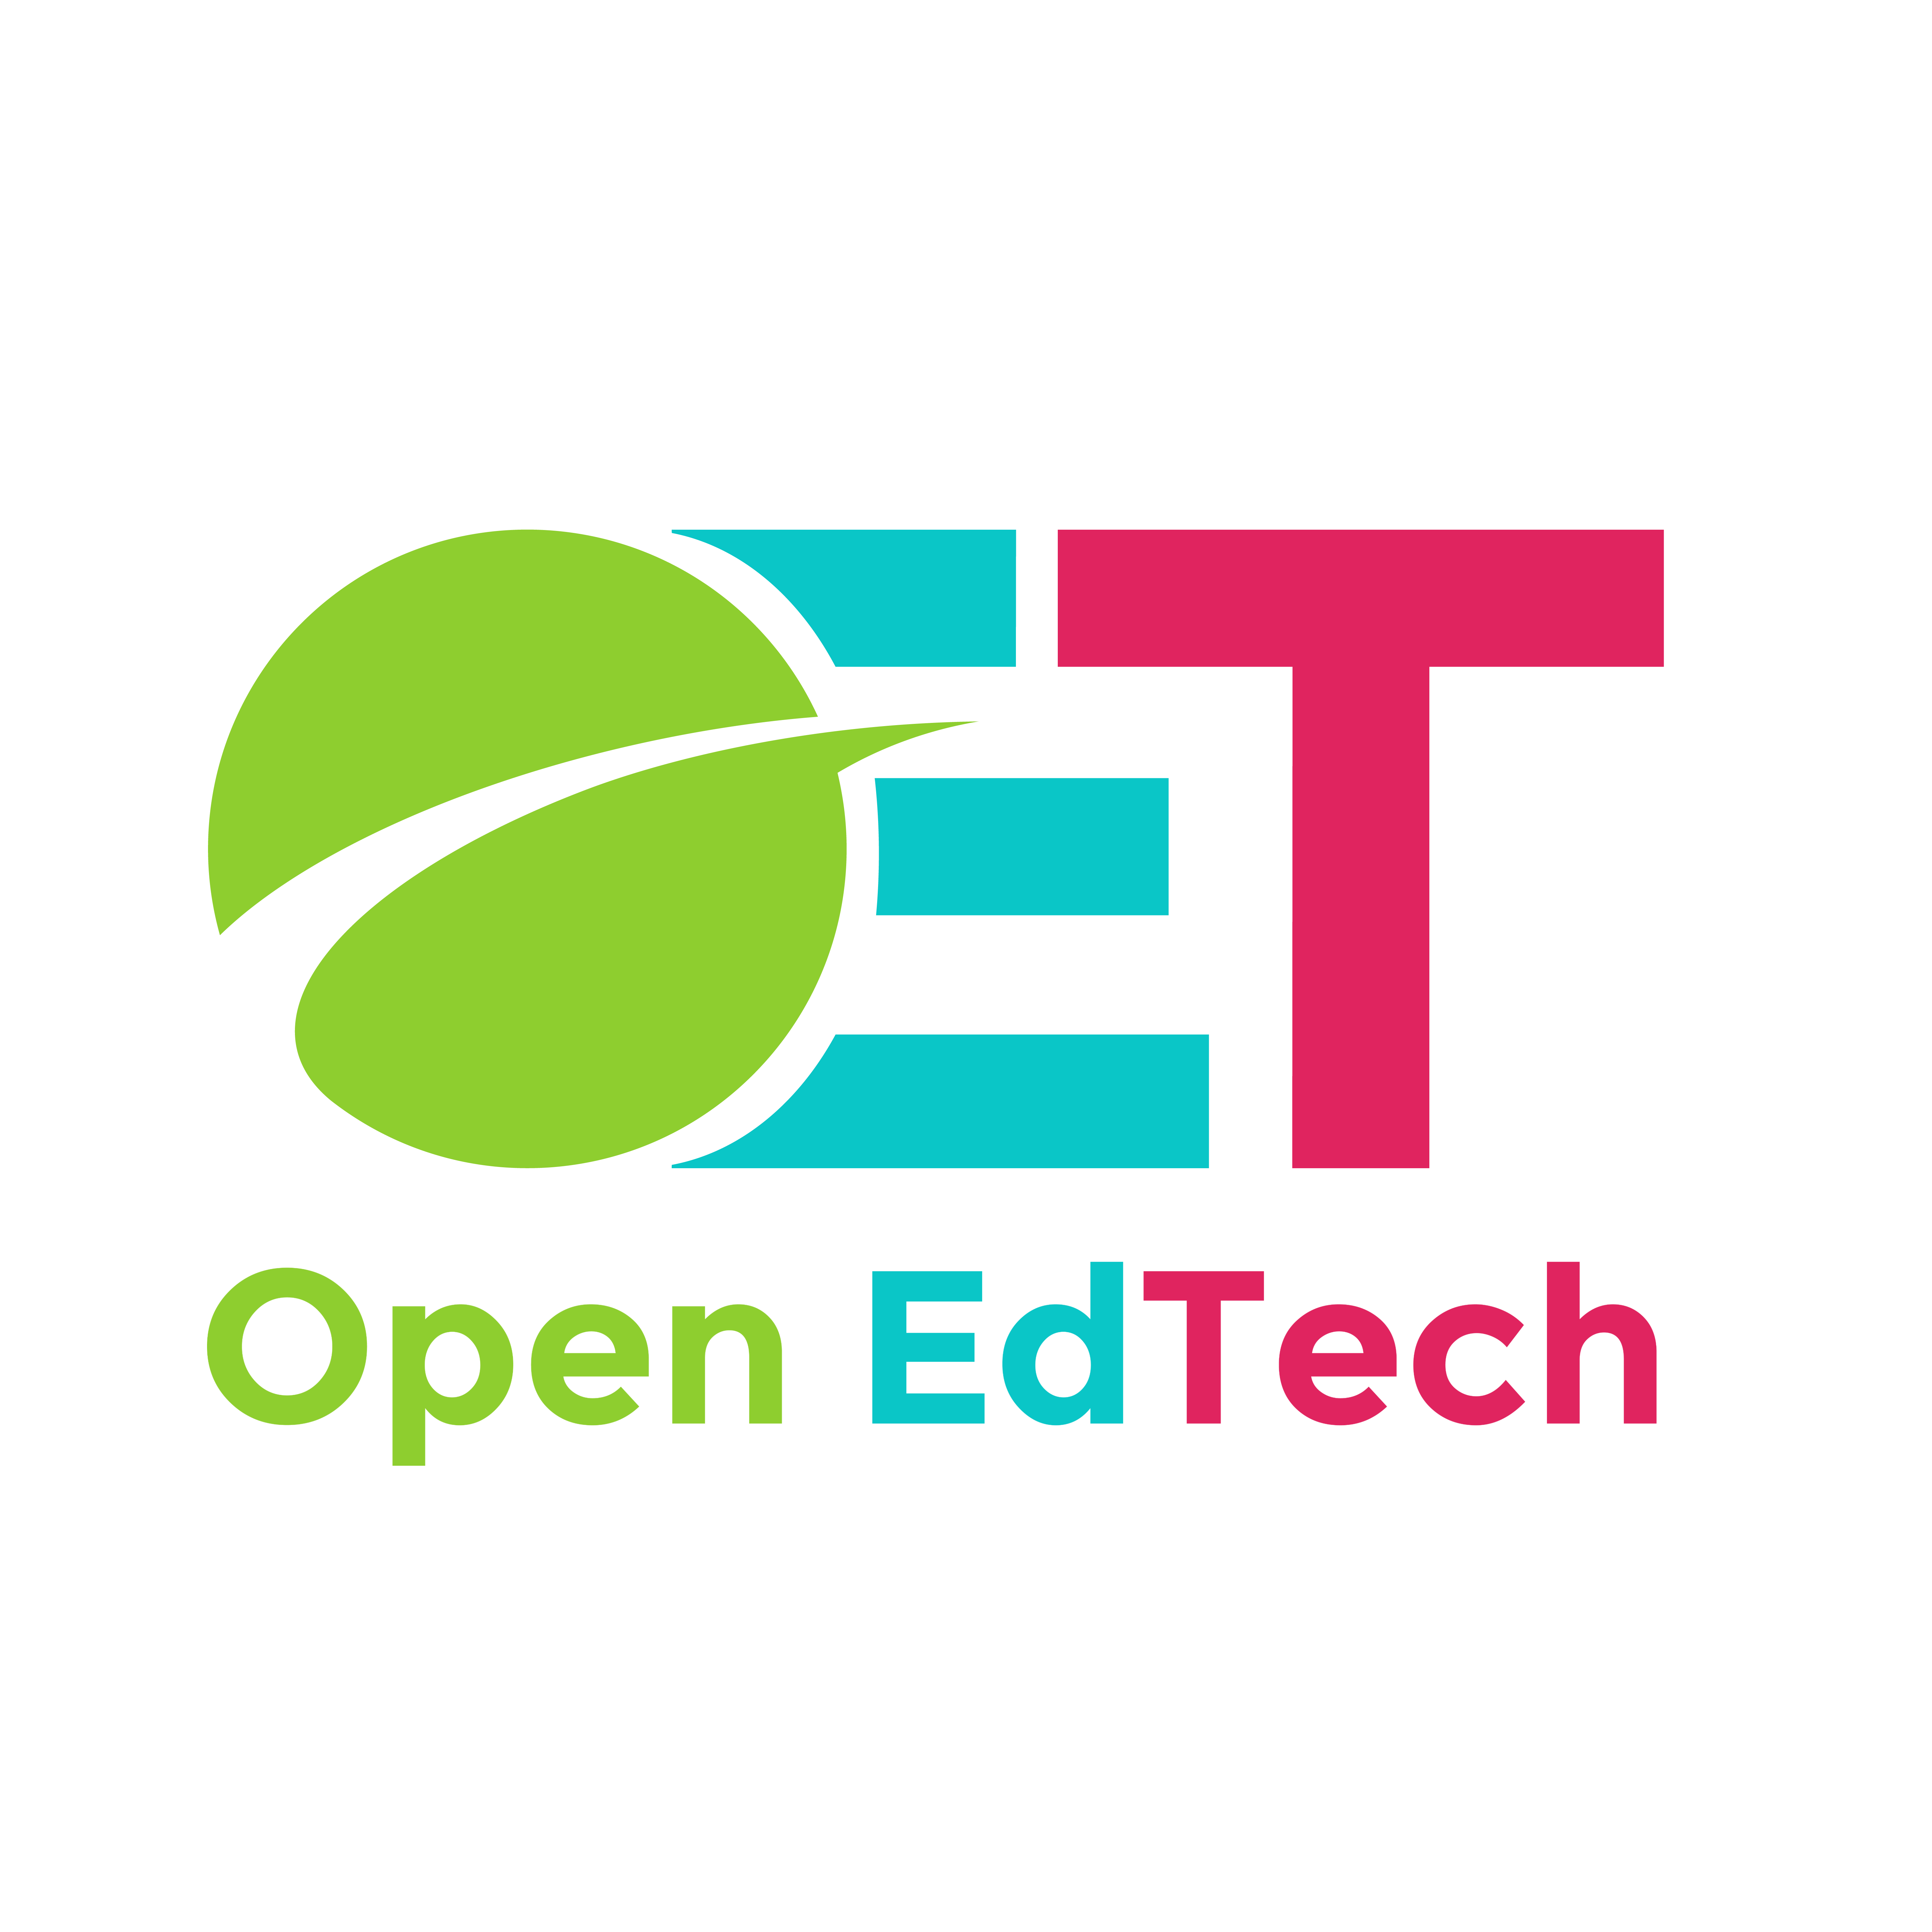 Open EdTech